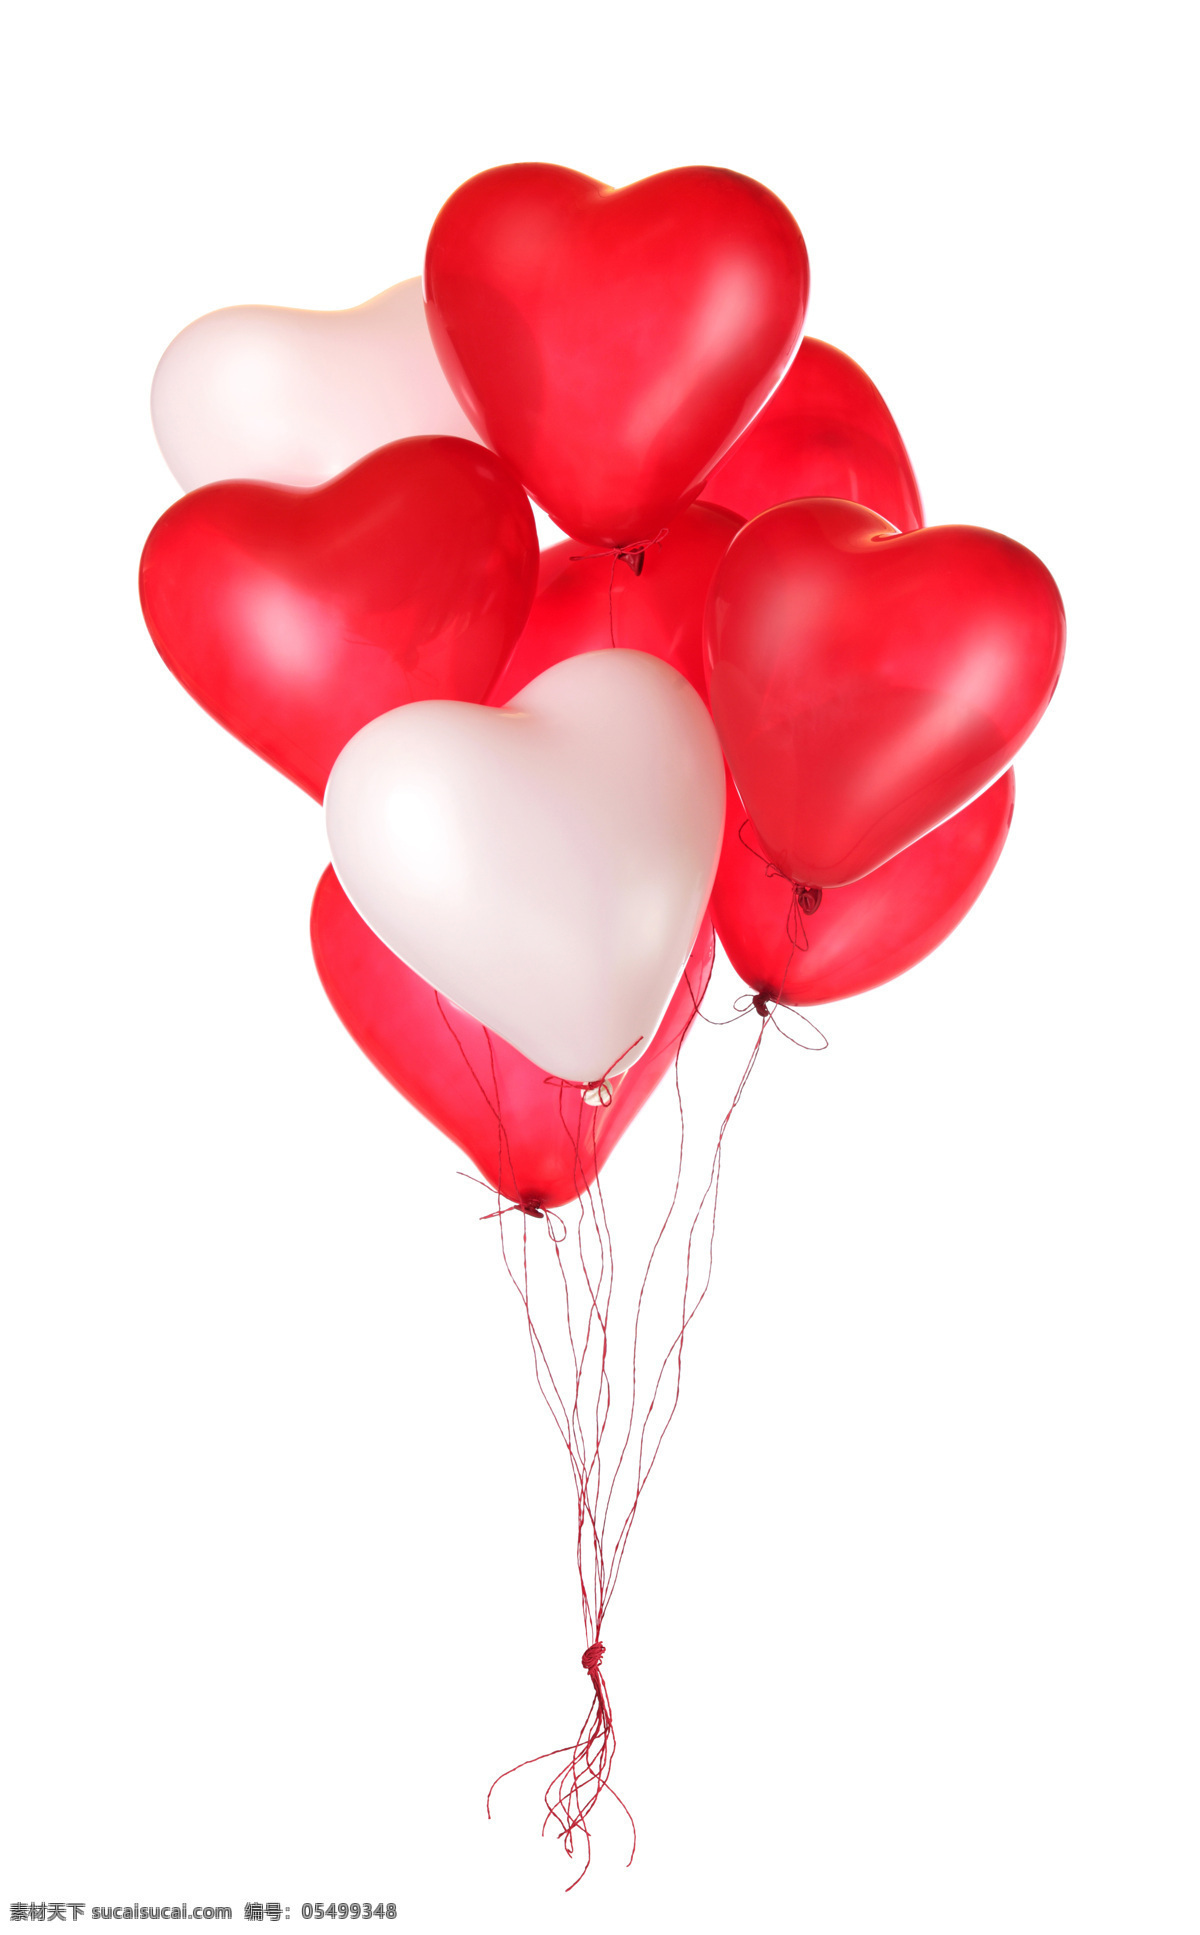 一串爱心气球 心形 桃心气球 爱心气球 情人节素材 情人节背景 其他类别 生活百科 白色